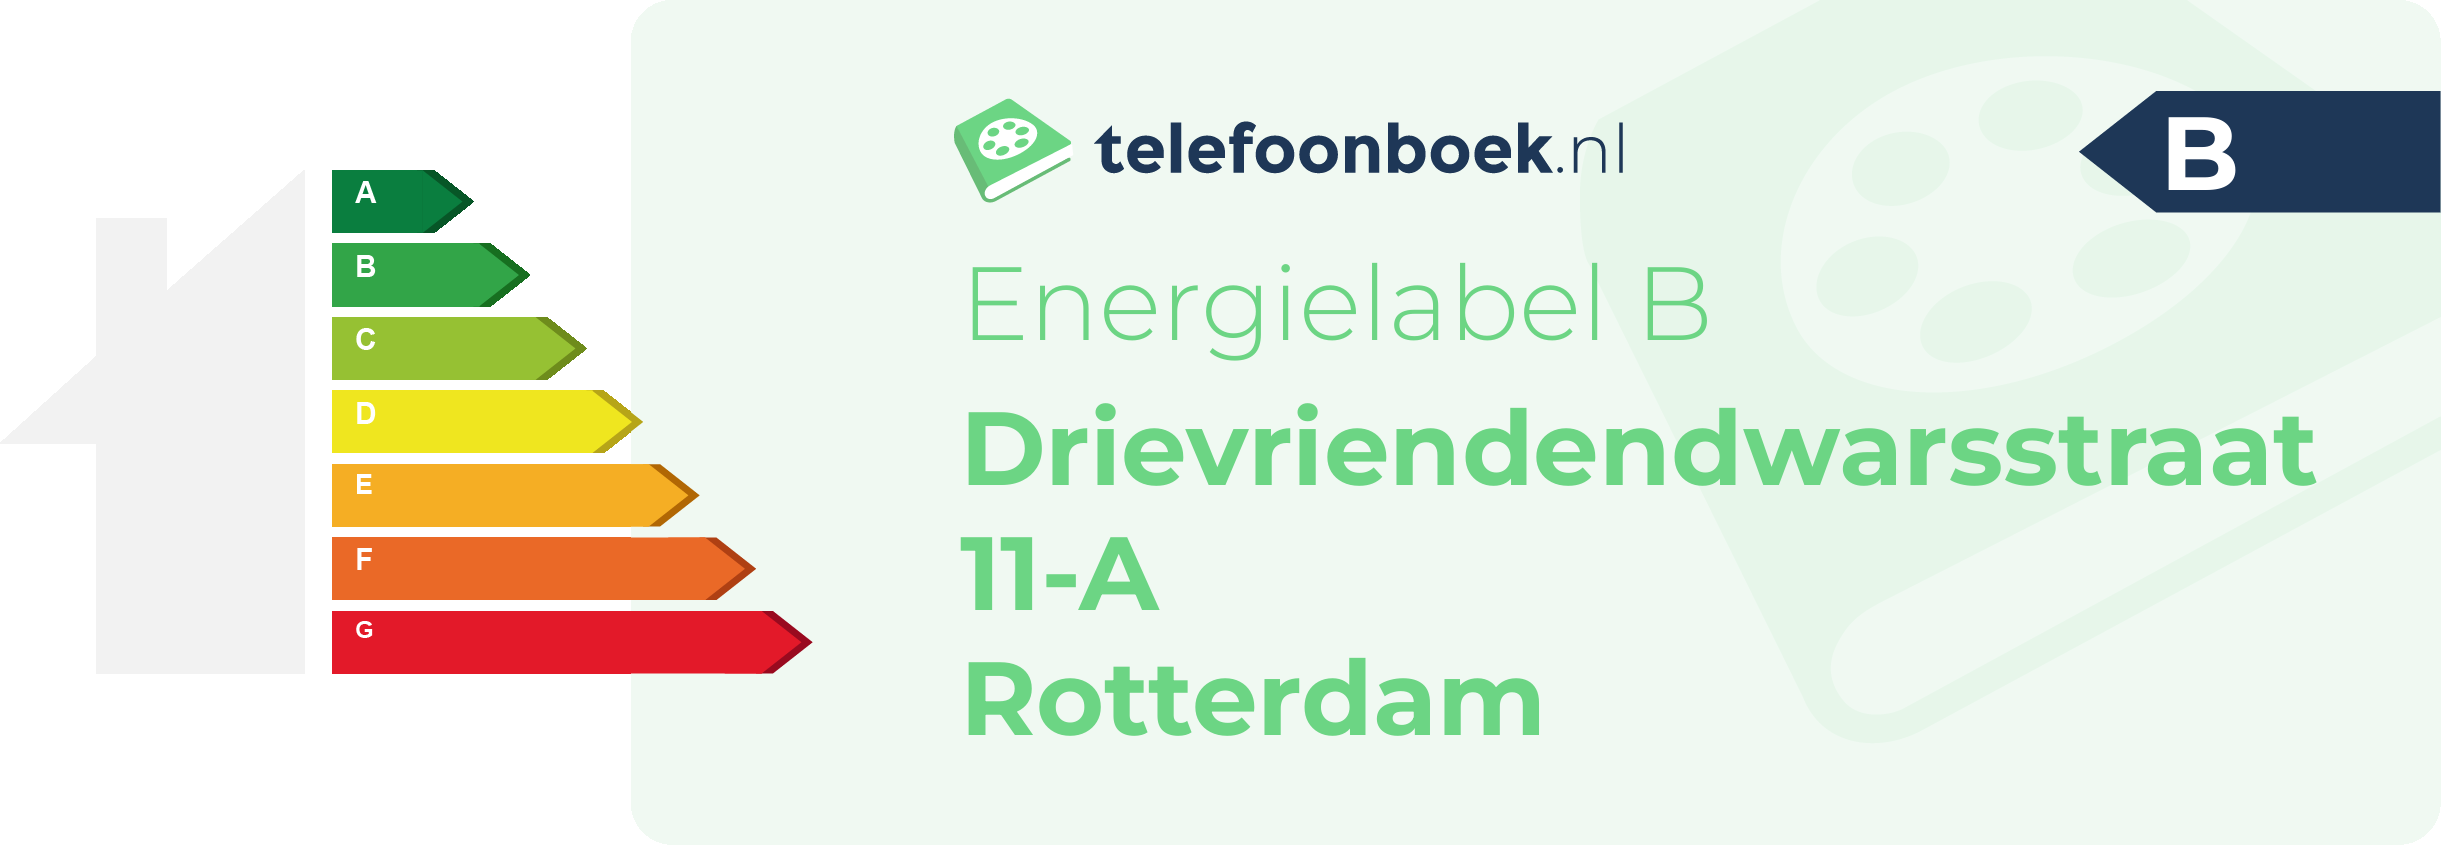 Energielabel Drievriendendwarsstraat 11-A Rotterdam